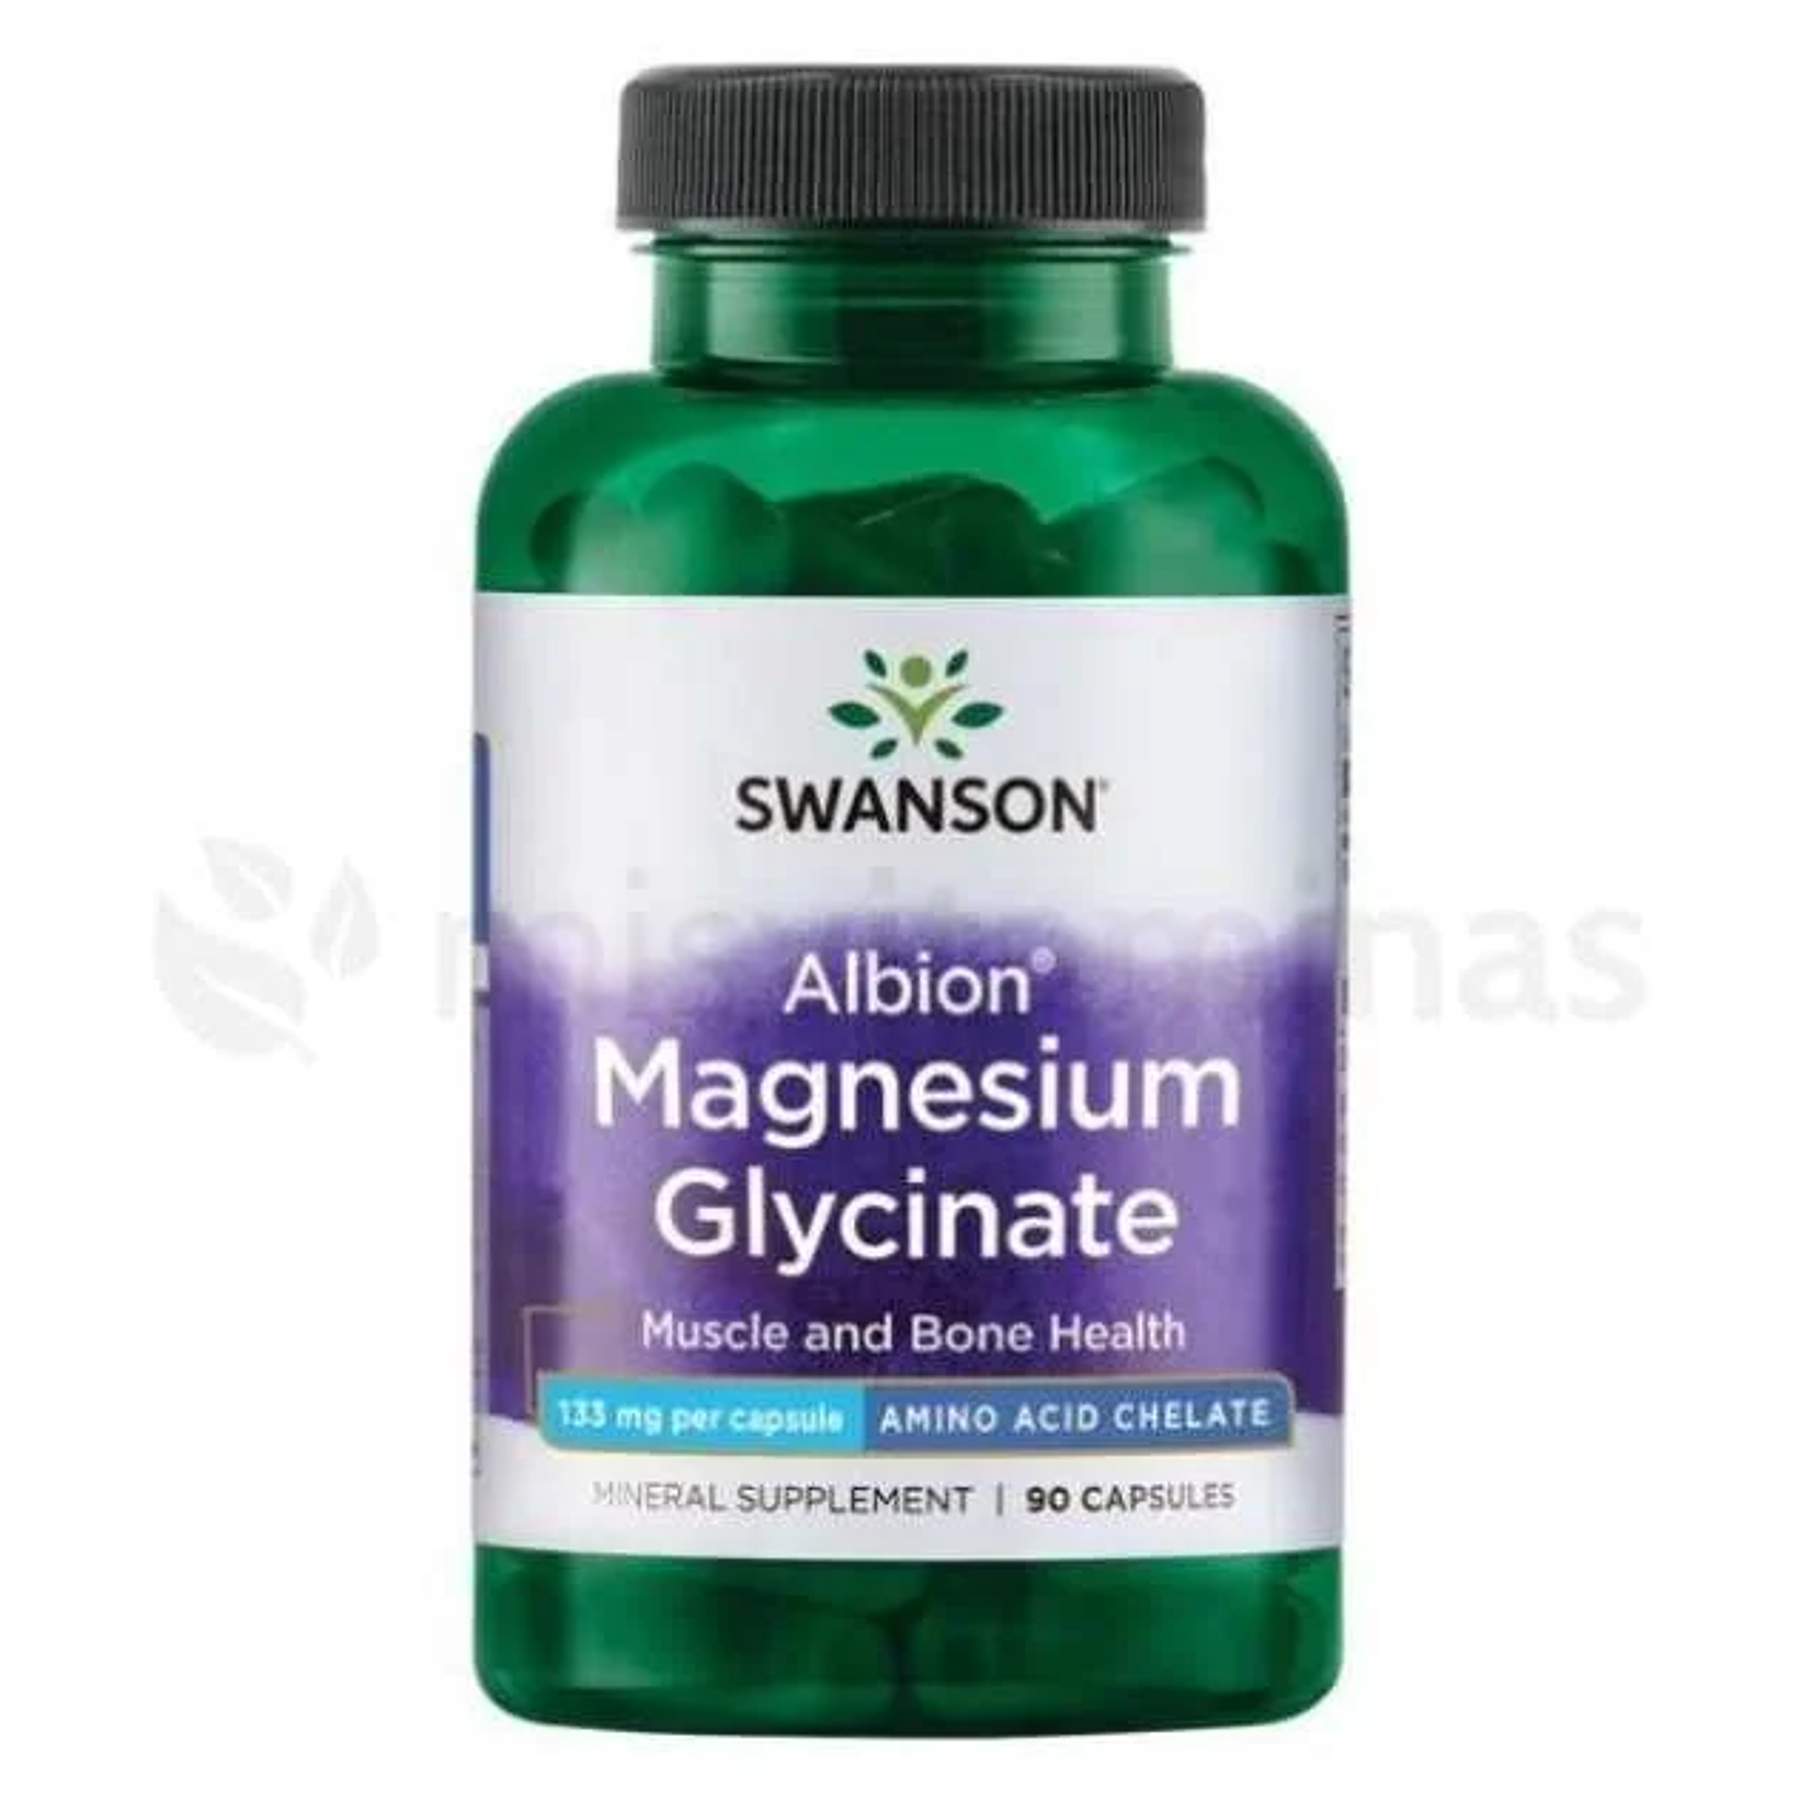 Magnesium Glycinate Albion Swanson 90 Capsulas